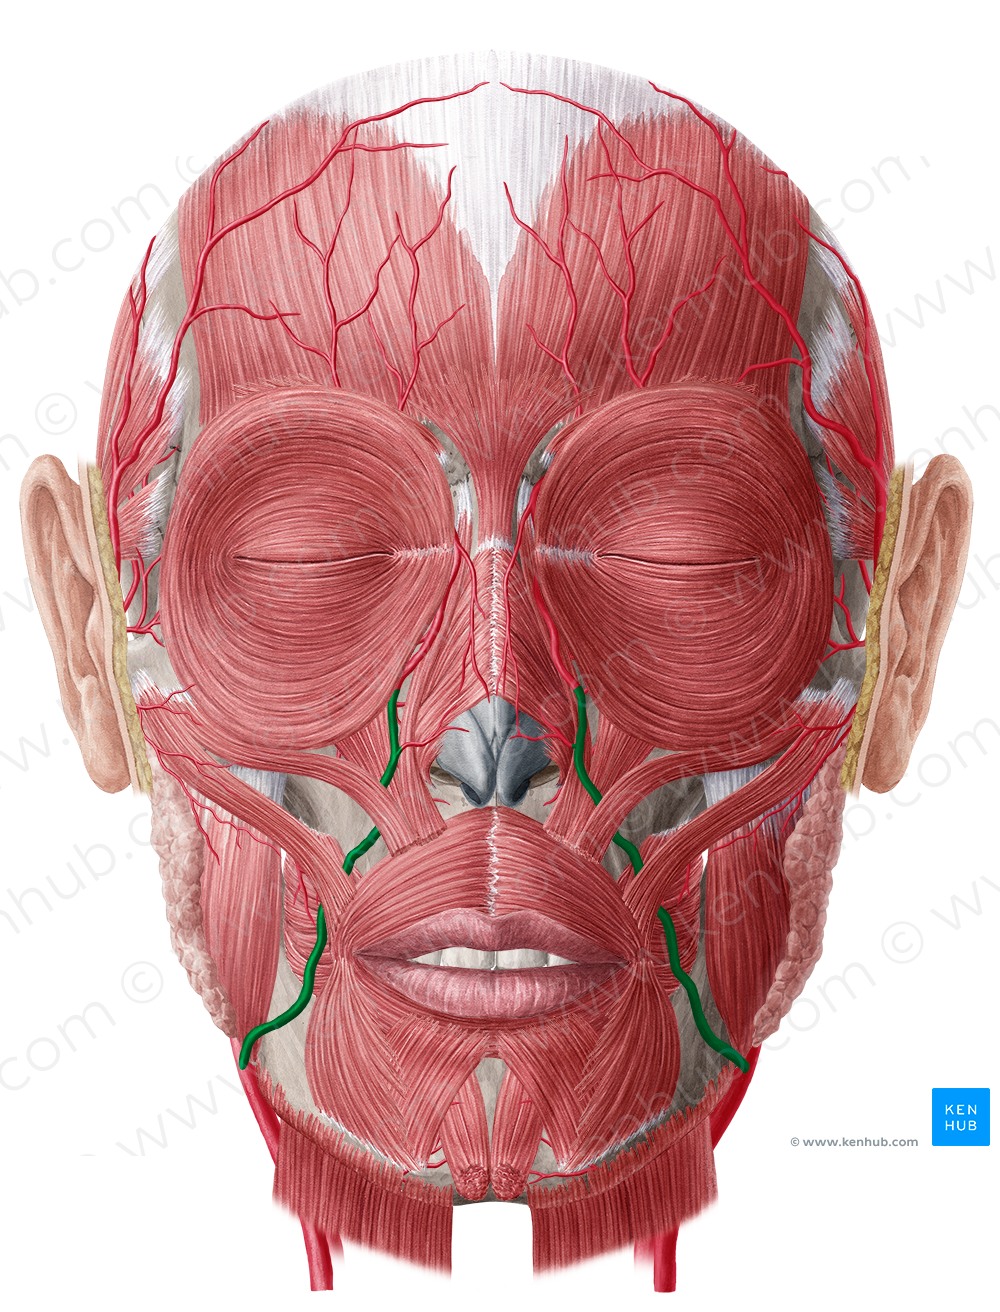 Facial artery (#1235)